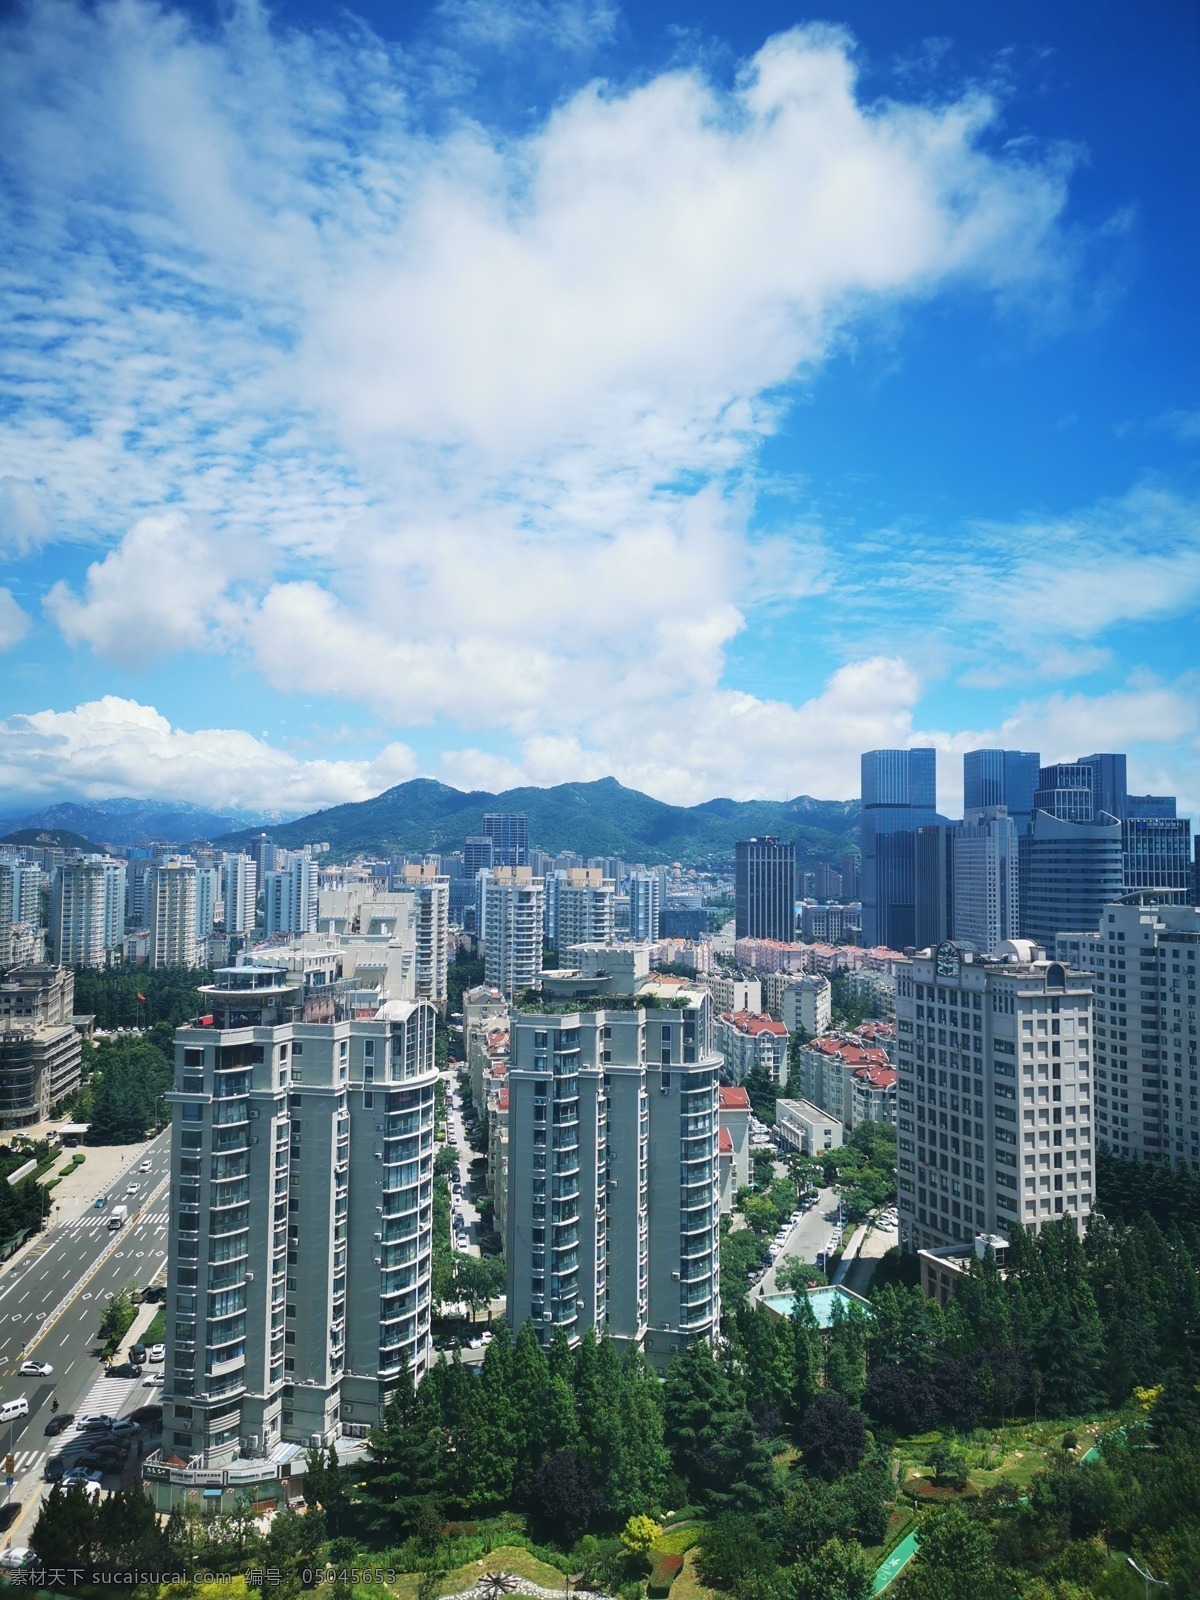 天空 下 高楼 蓝天 白云 高楼大厦 城市 青岛 沿途的风景 旅游摄影 自然风景